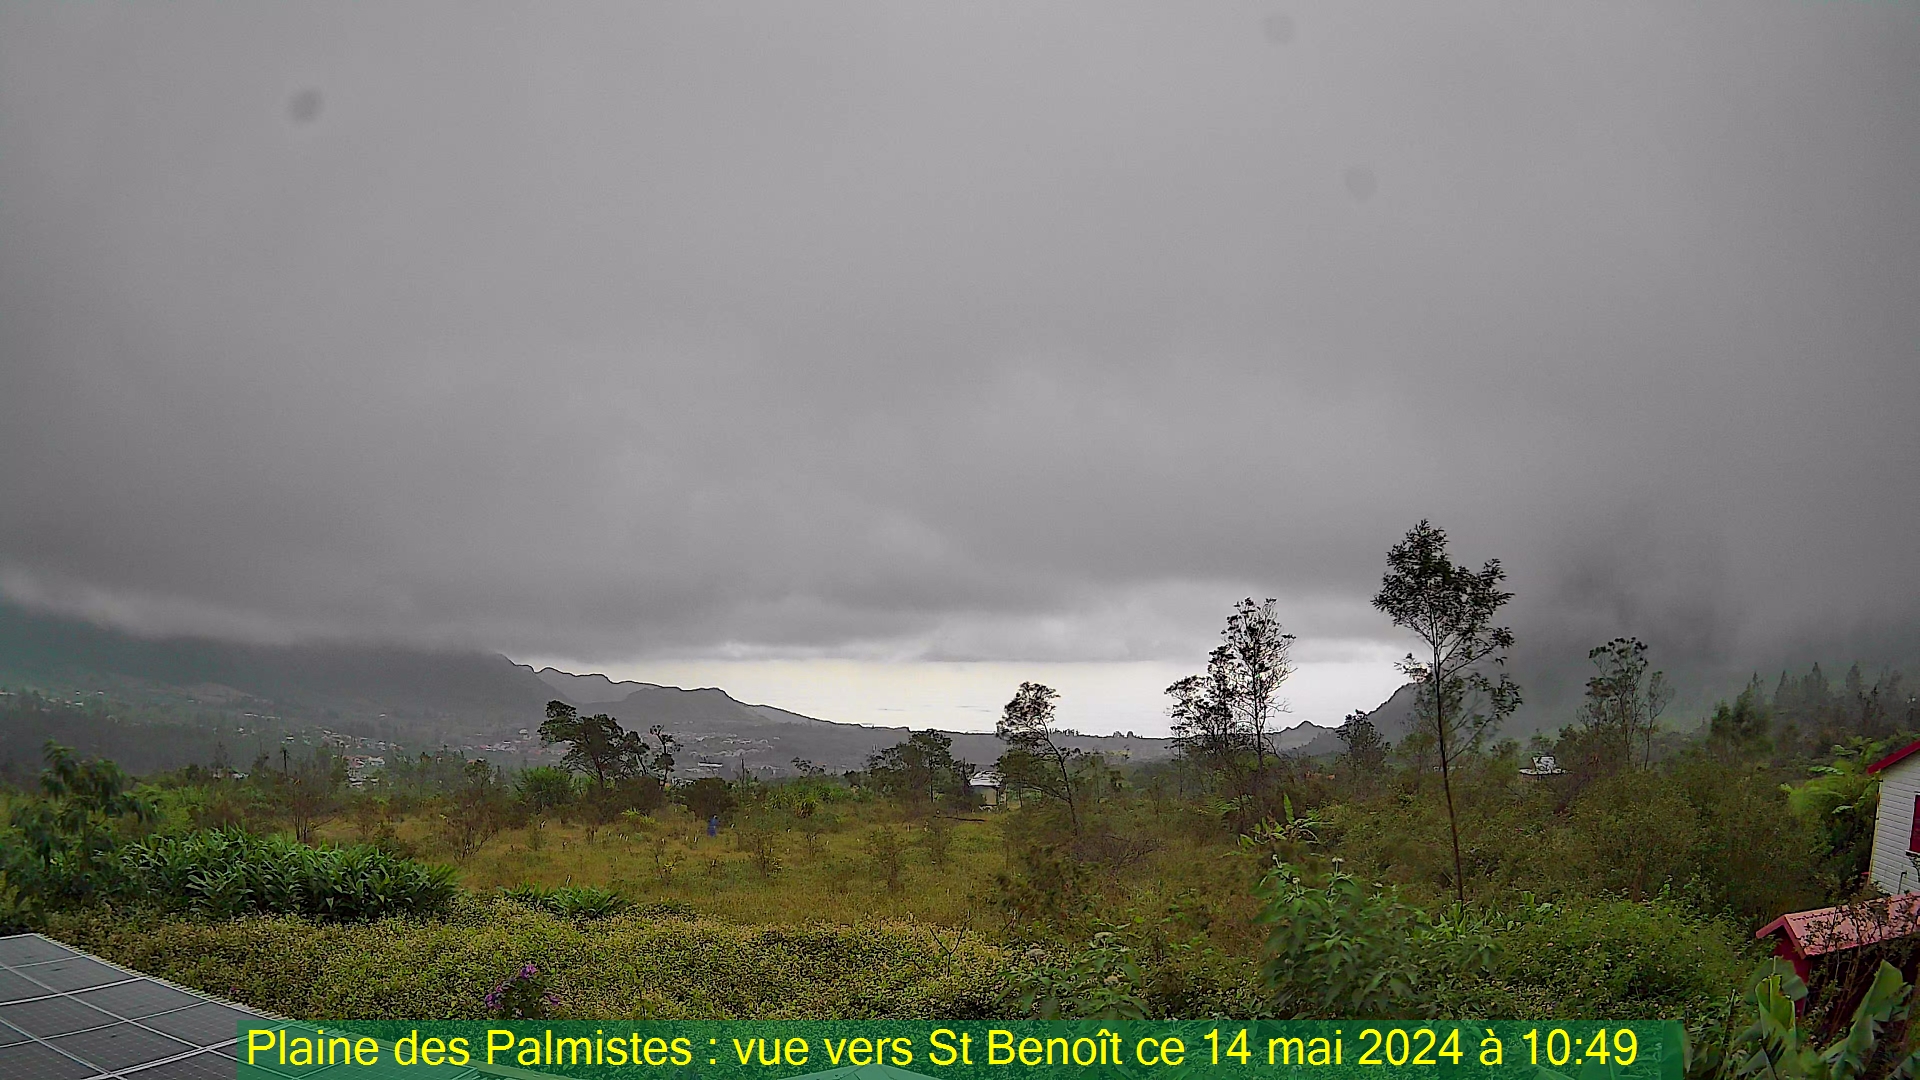 Saint-Denis (Réunion) Søn. 10:50